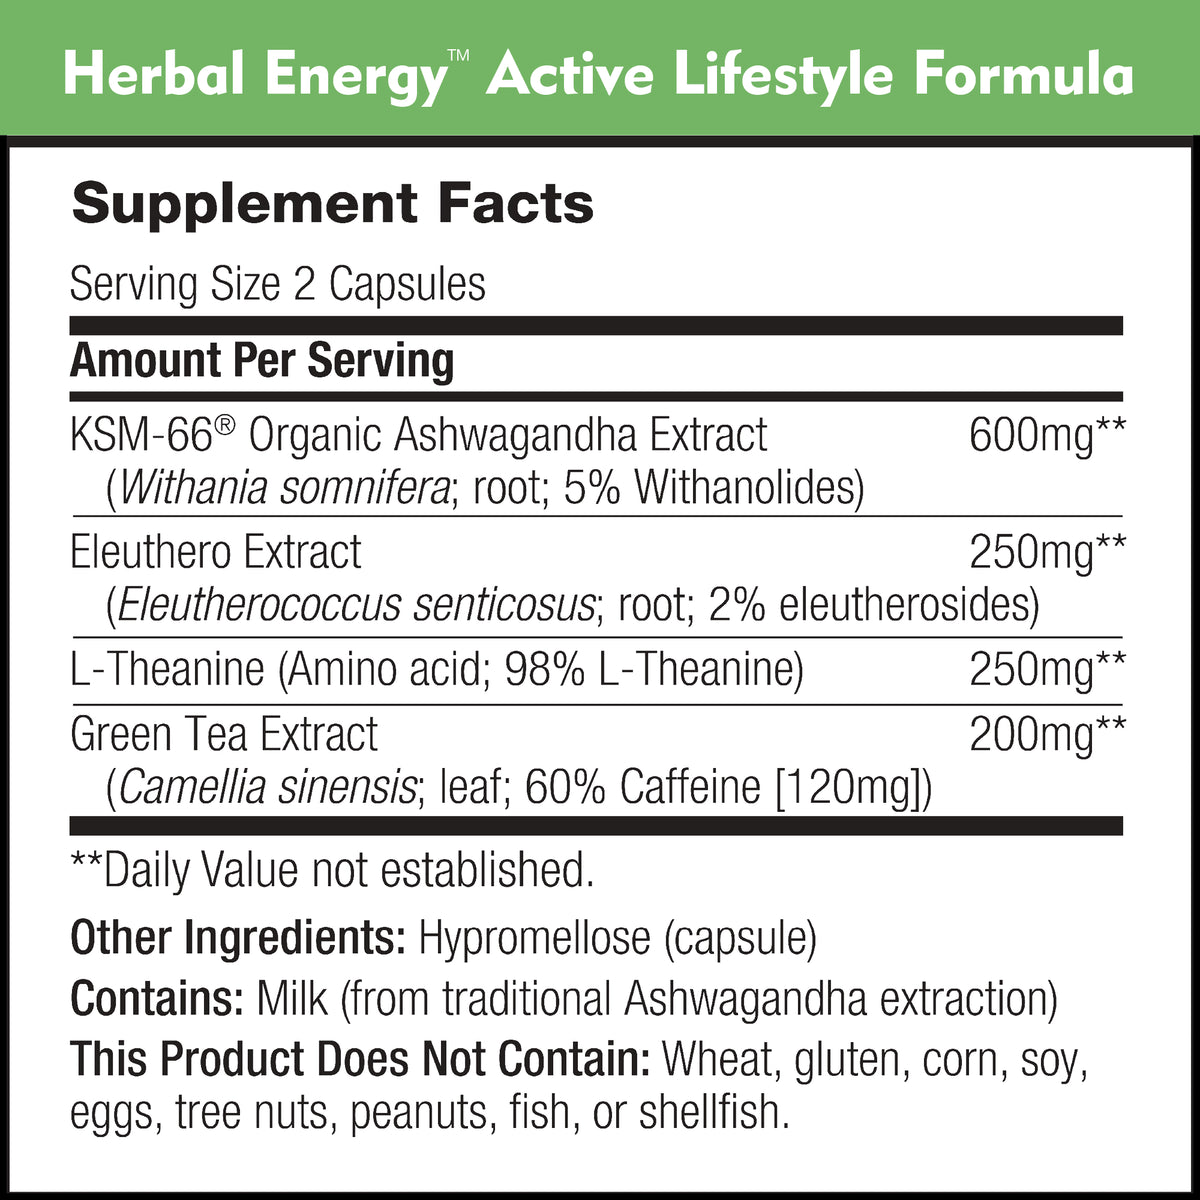 Herbal energy formulas